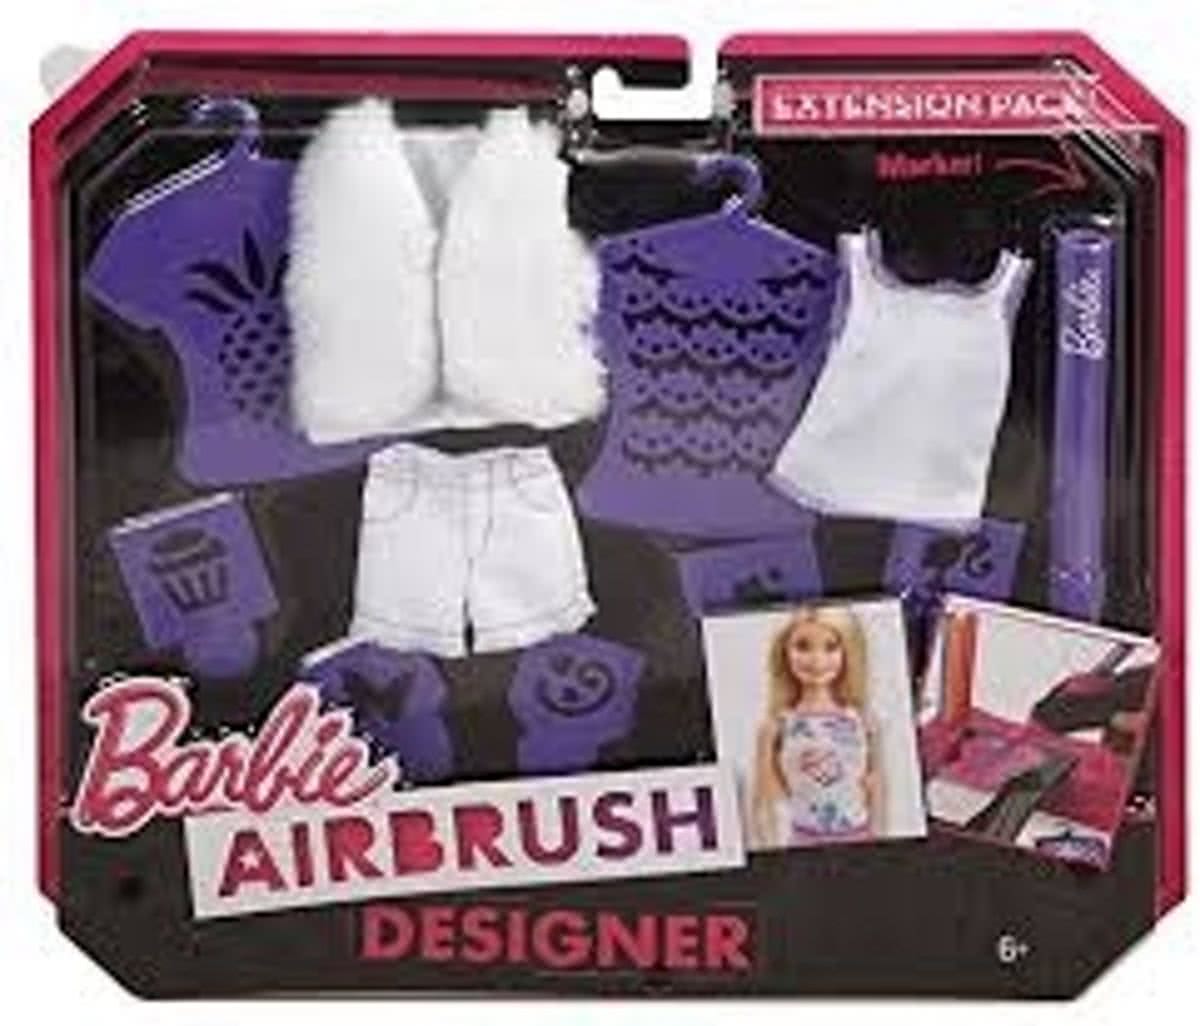 Barbie Air brush navul set paars